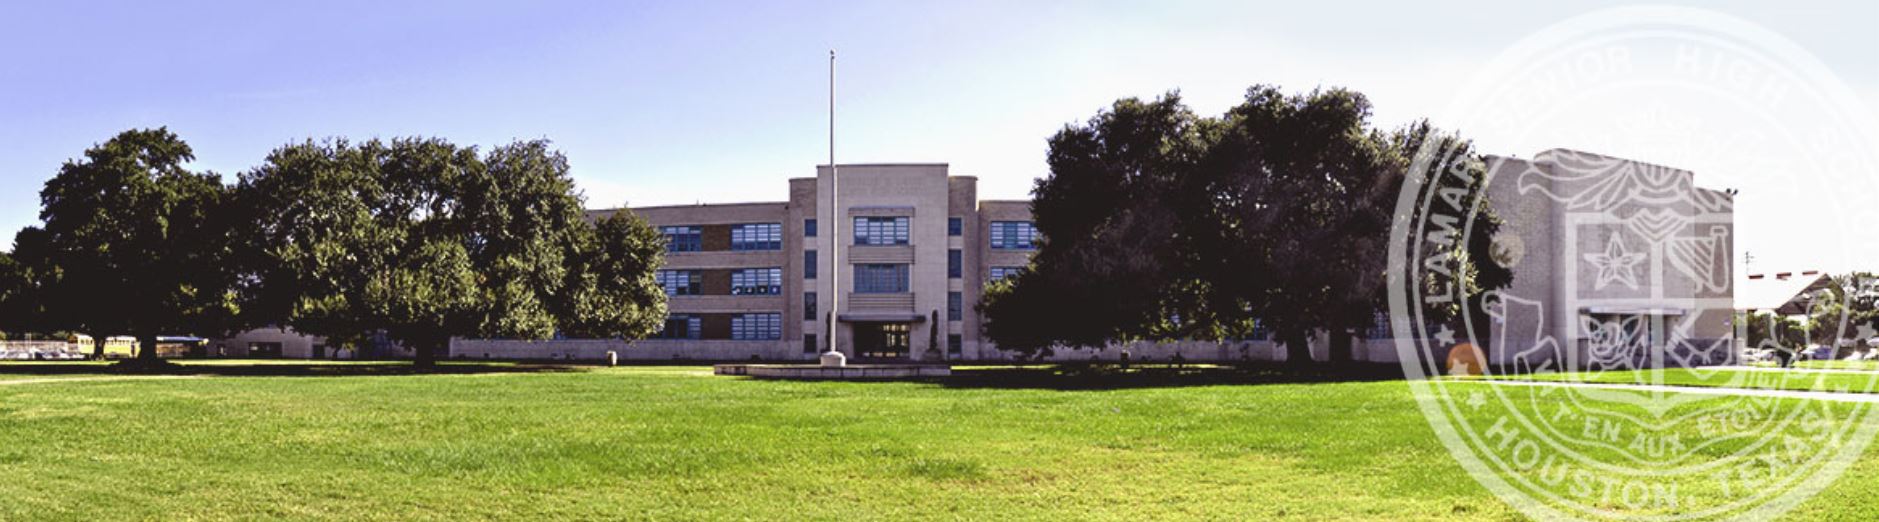 Lamar High School - 2018